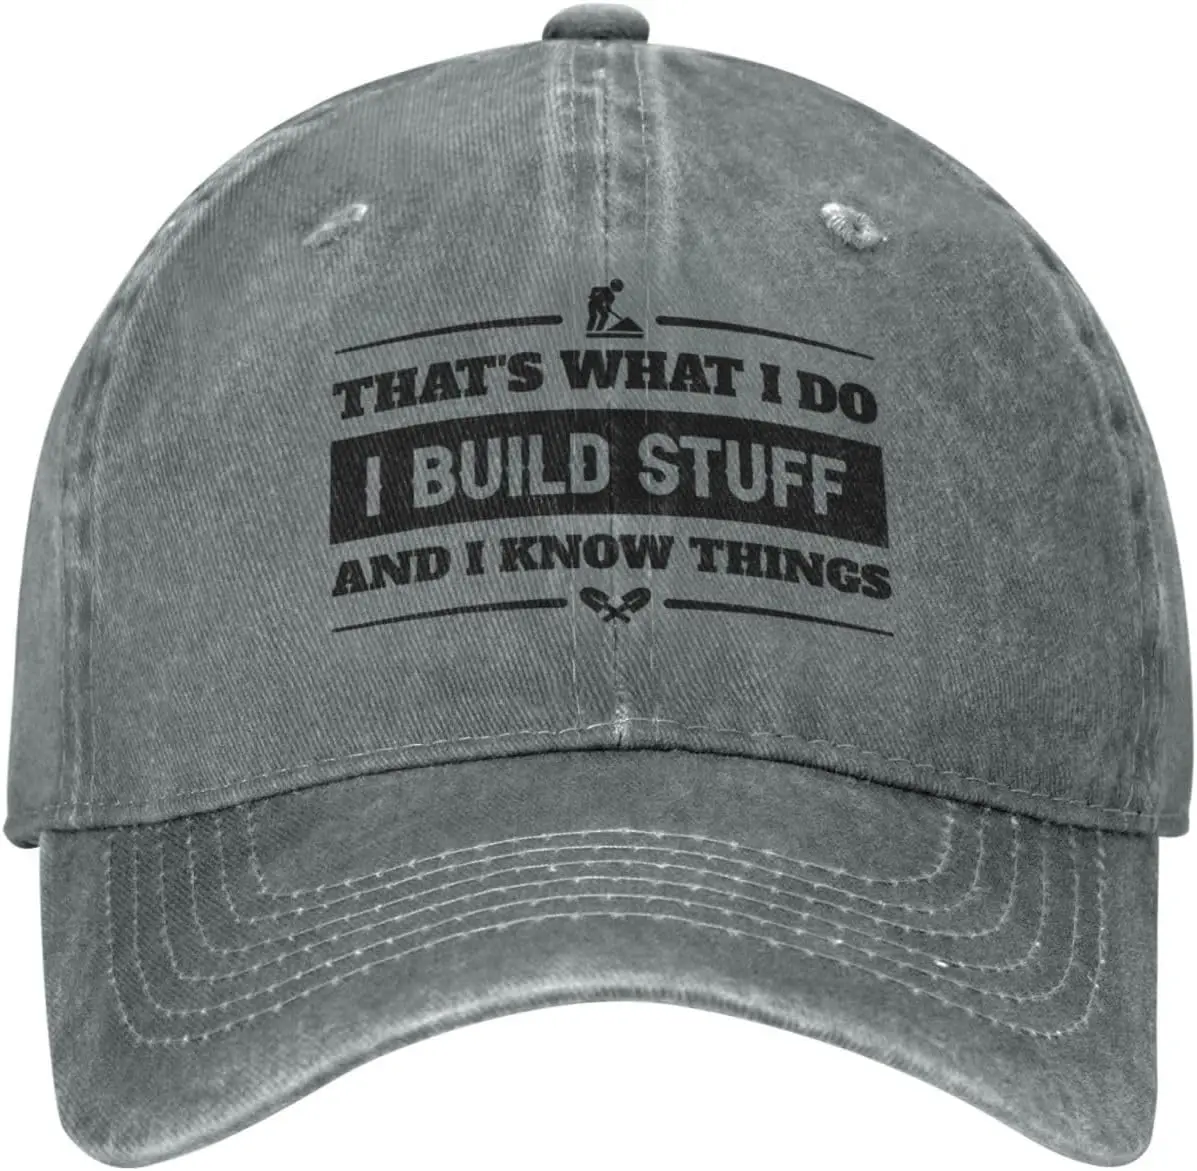 

Забавная шляпа, вот что я делаю, я создаю вещи и знаю вещи, шляпа для мужчин, бейсбольные шляпы, графические шляпы